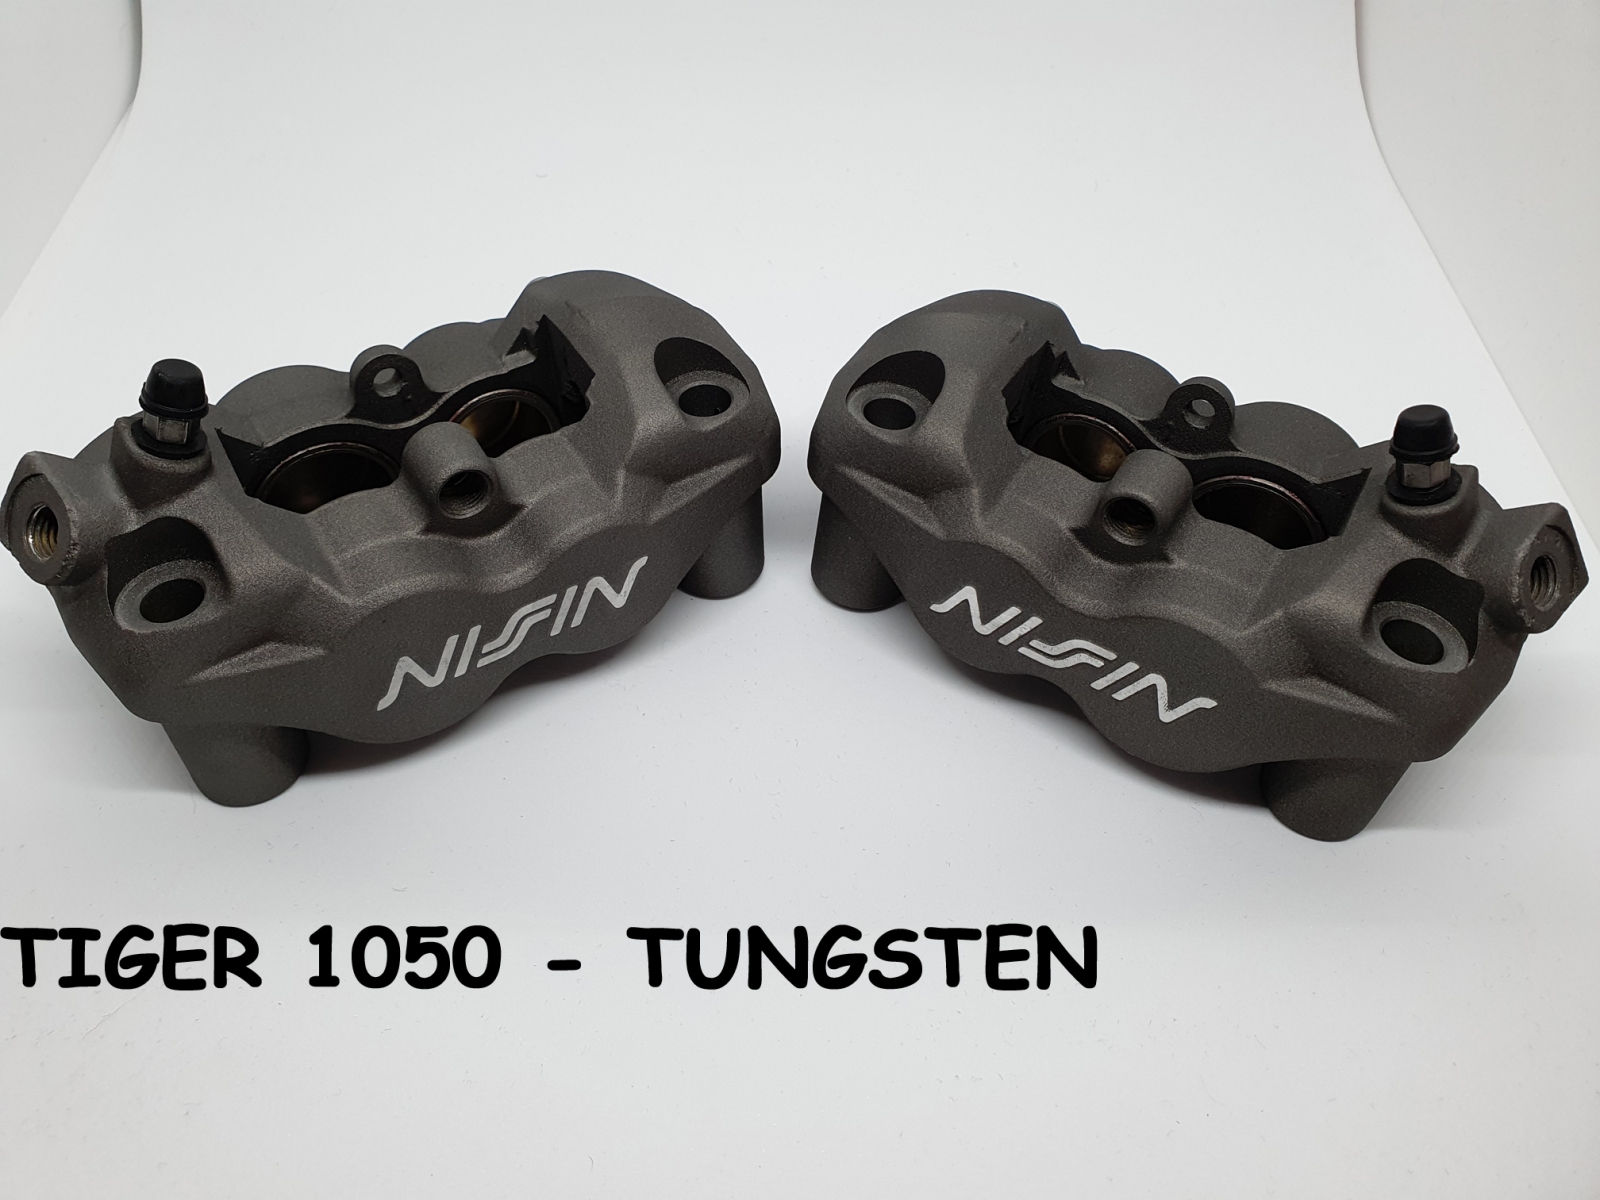 Tiger-1050-Tungsten